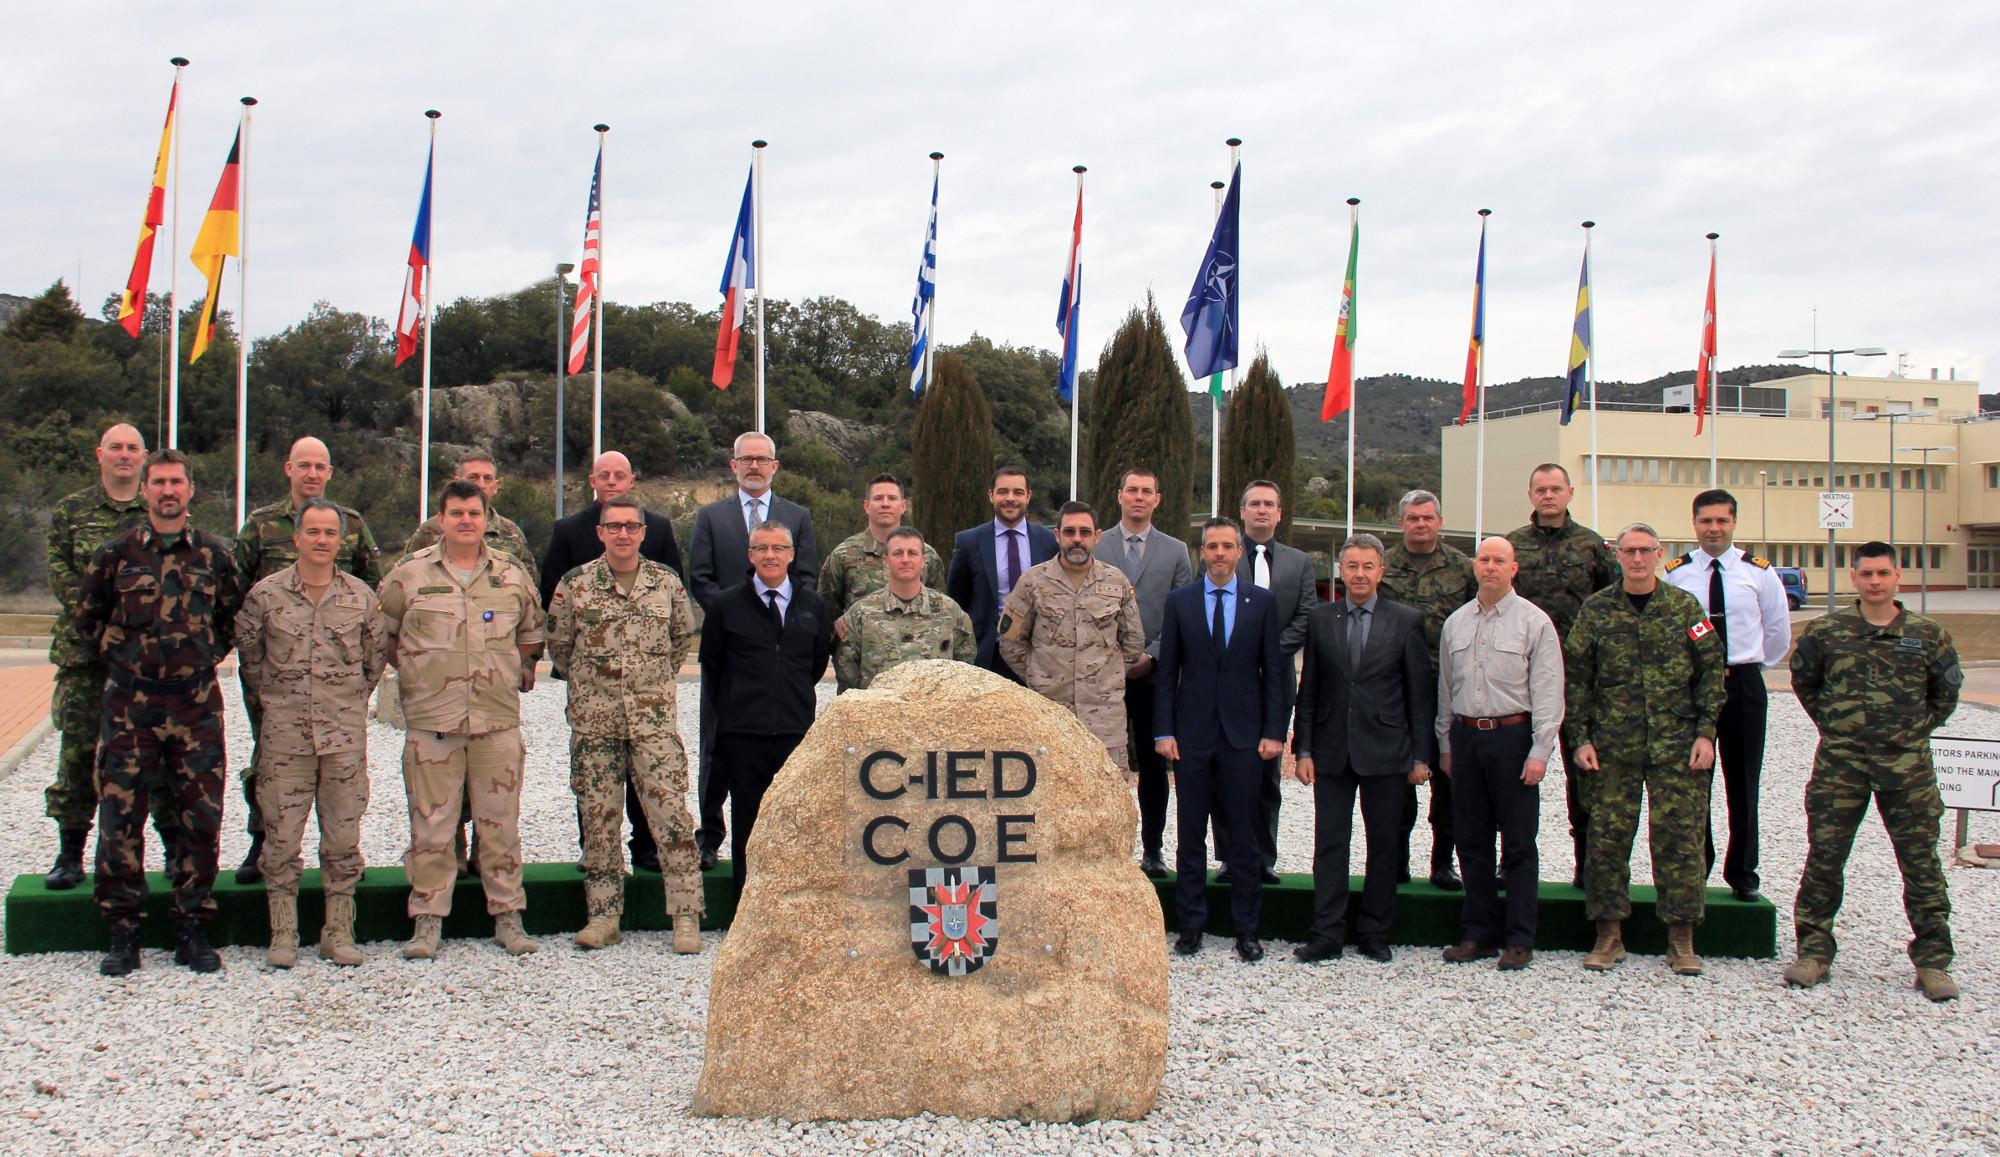 Celebración de la quinta Conferencia Anual de C-IED en el Centro de Excelencia de Madrid